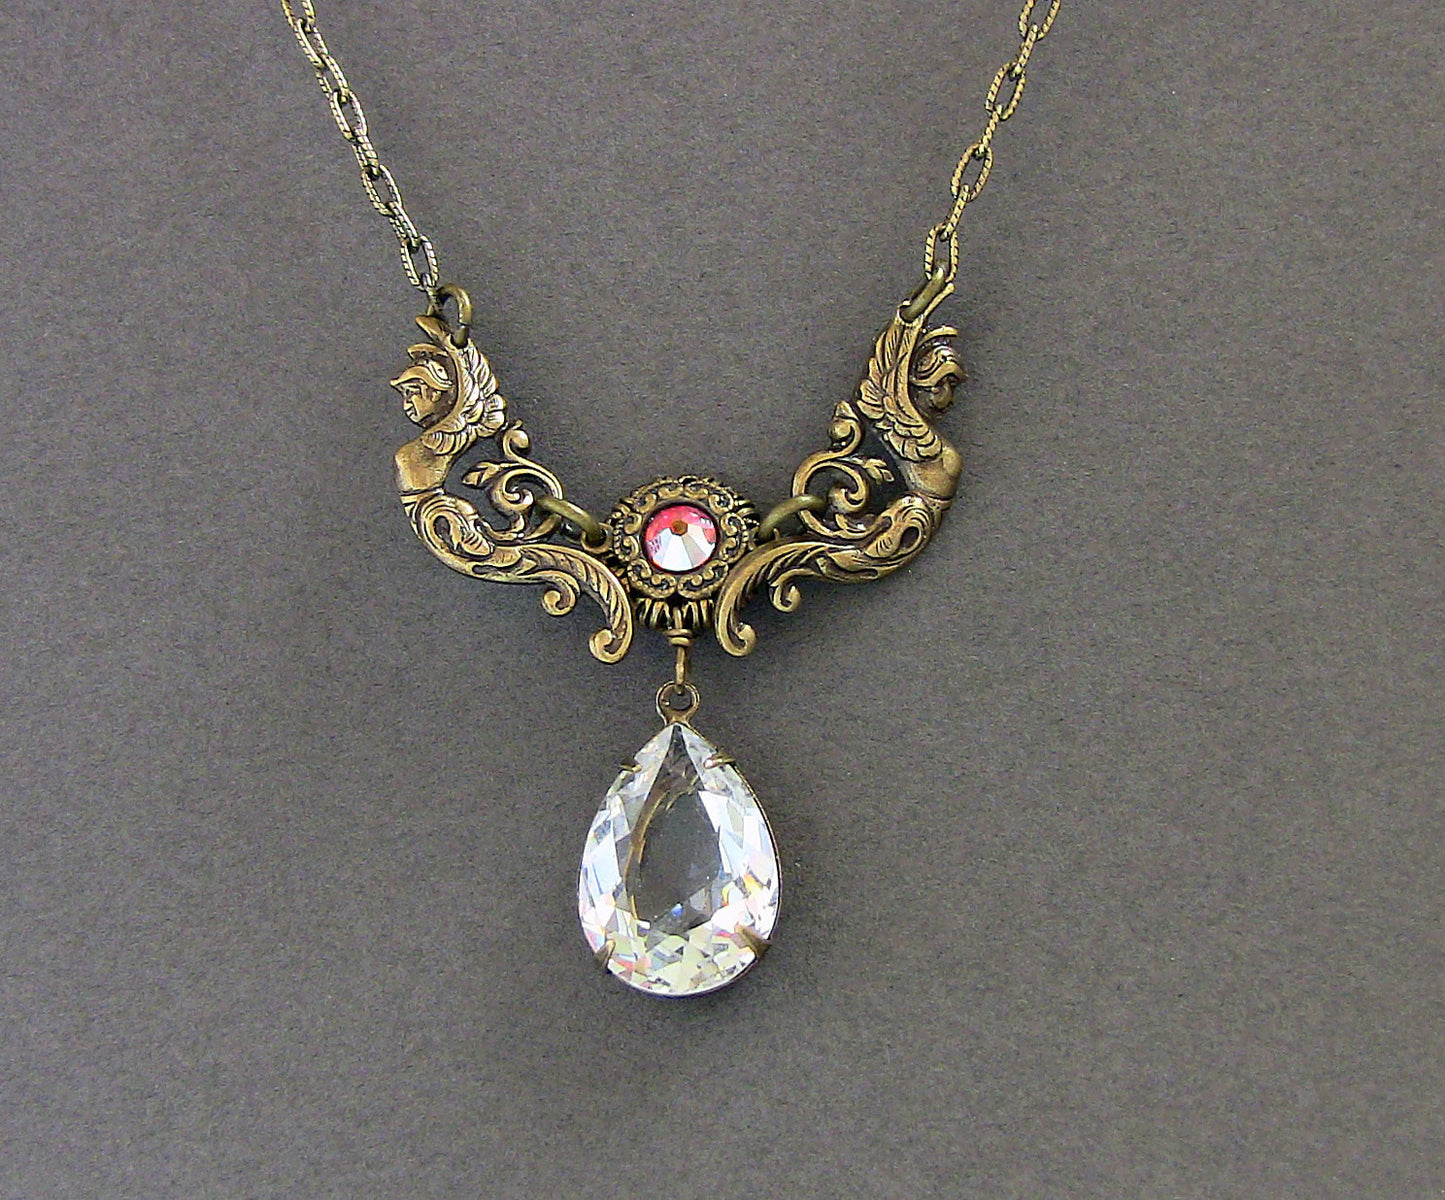 Vintage Brass Necklace with Swarovski Crystal - Aranwen's Jewelry
 - 2